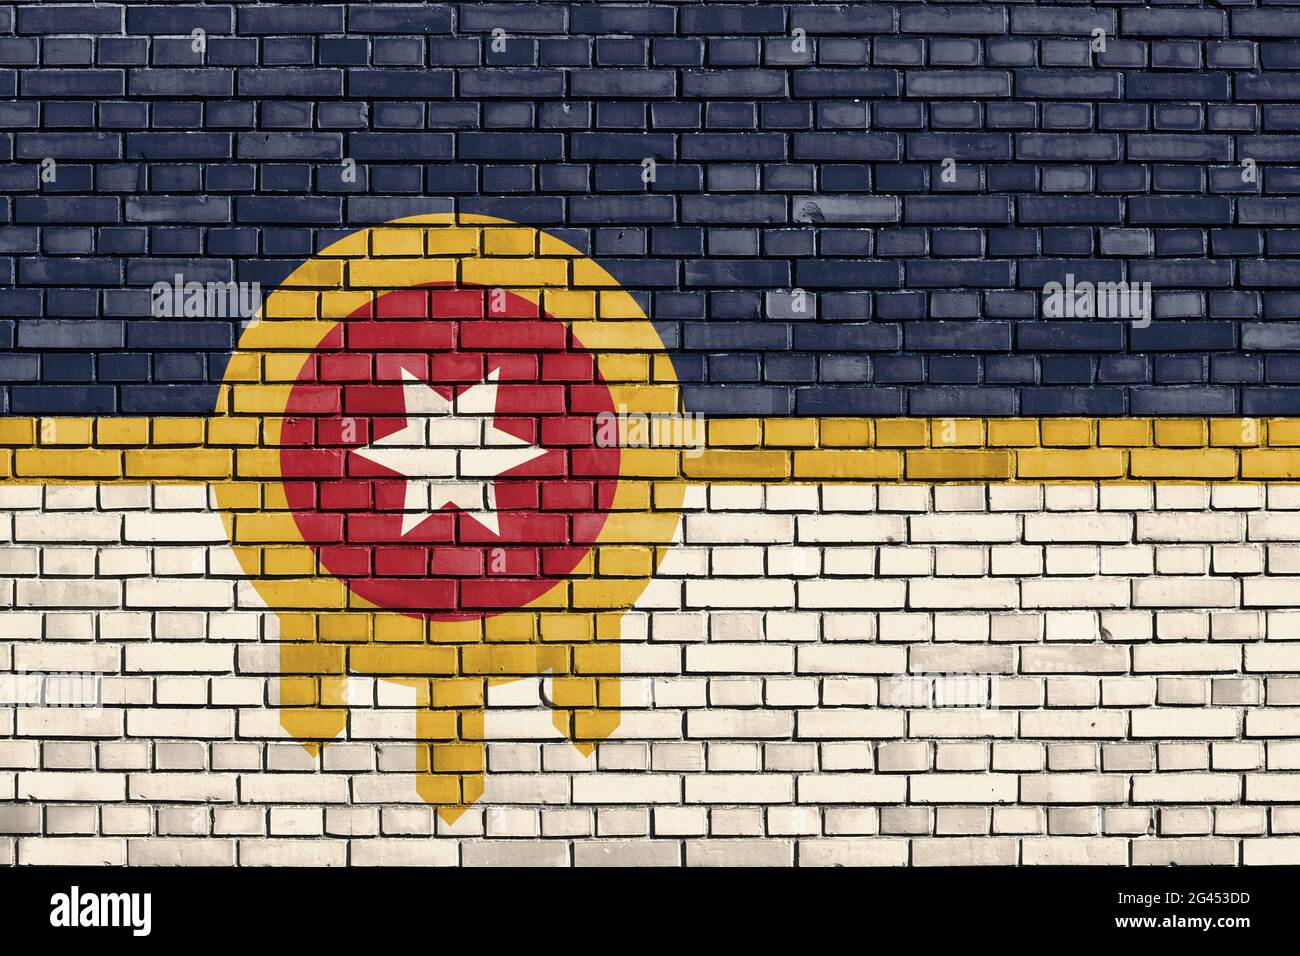 Flagge von Tulsa, Oklahoma auf Ziegelmauer gemalt Stockfoto